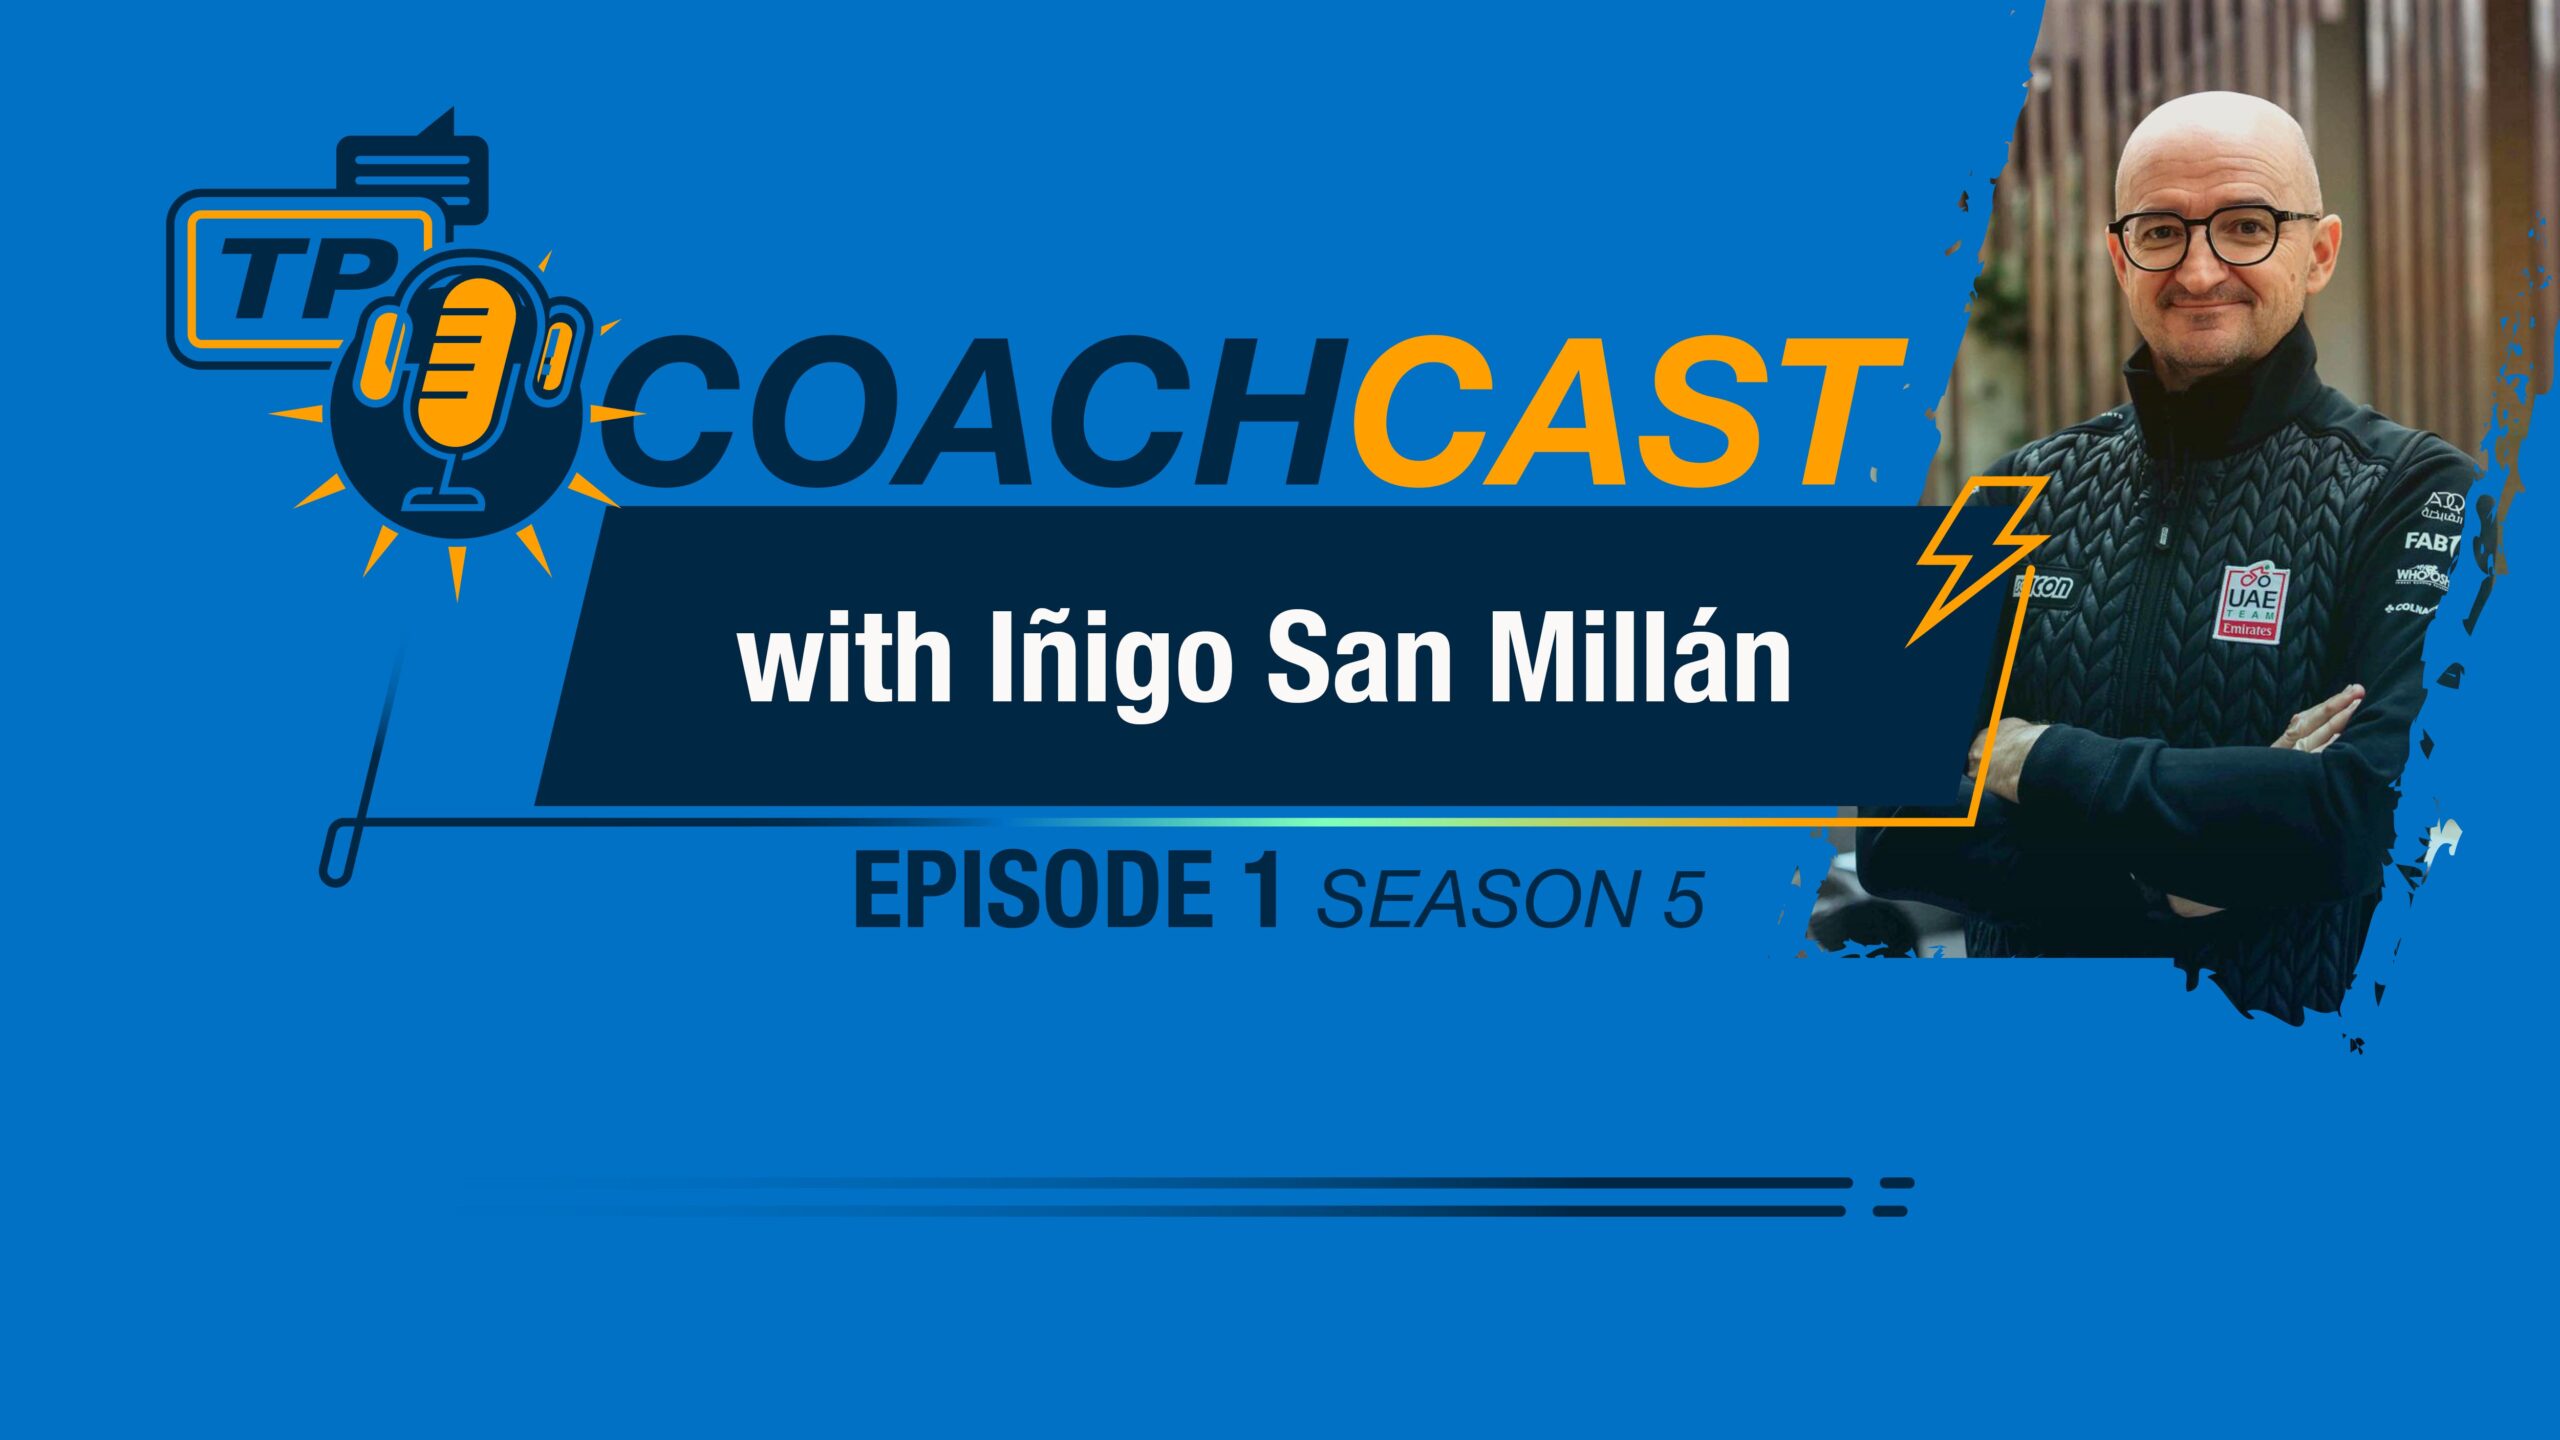 Iñigo San Millán On The Trainingpeaks Coachcast